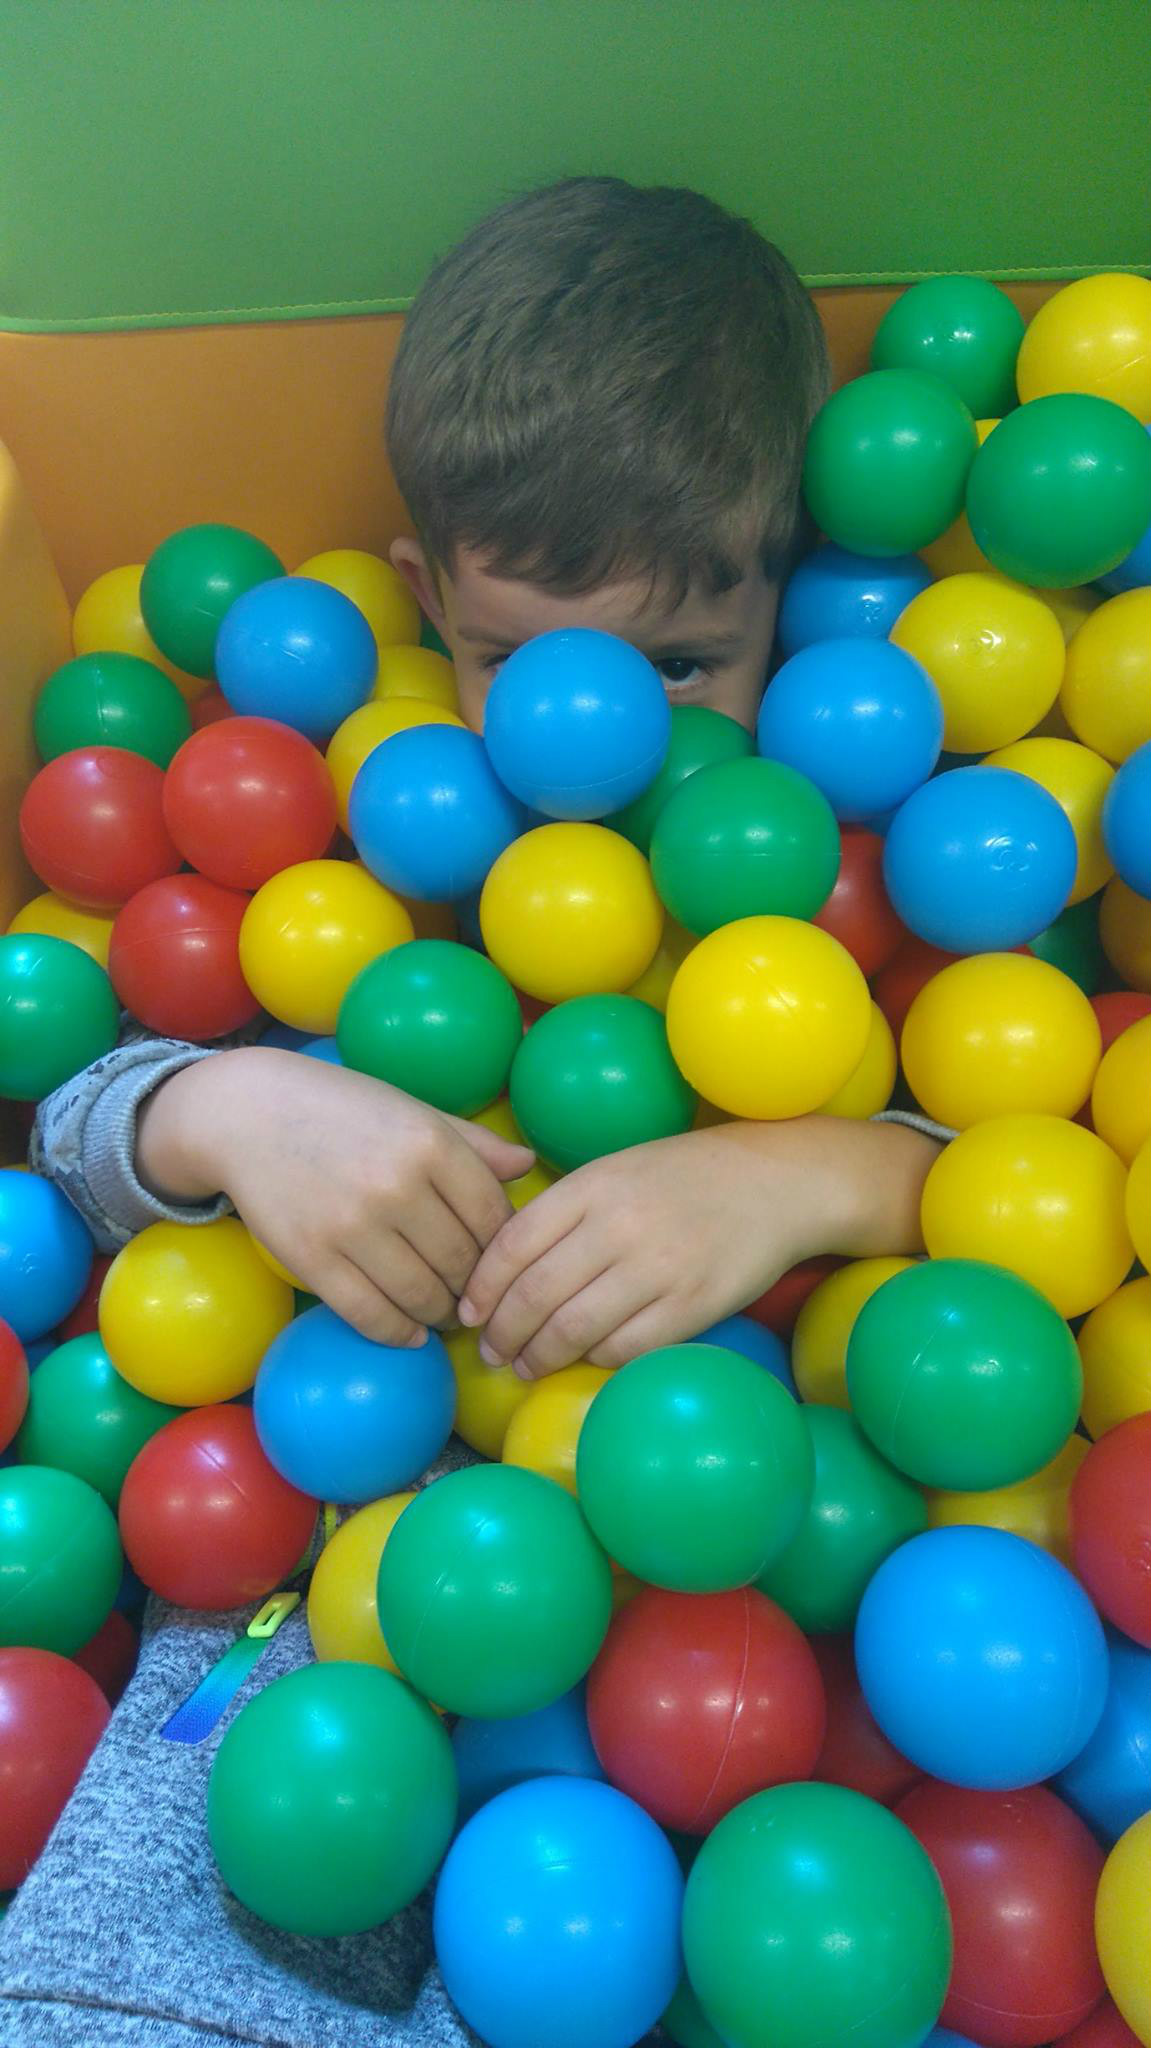 W basenie z kolorowymi piłeczkami bawi się chłopczyk.